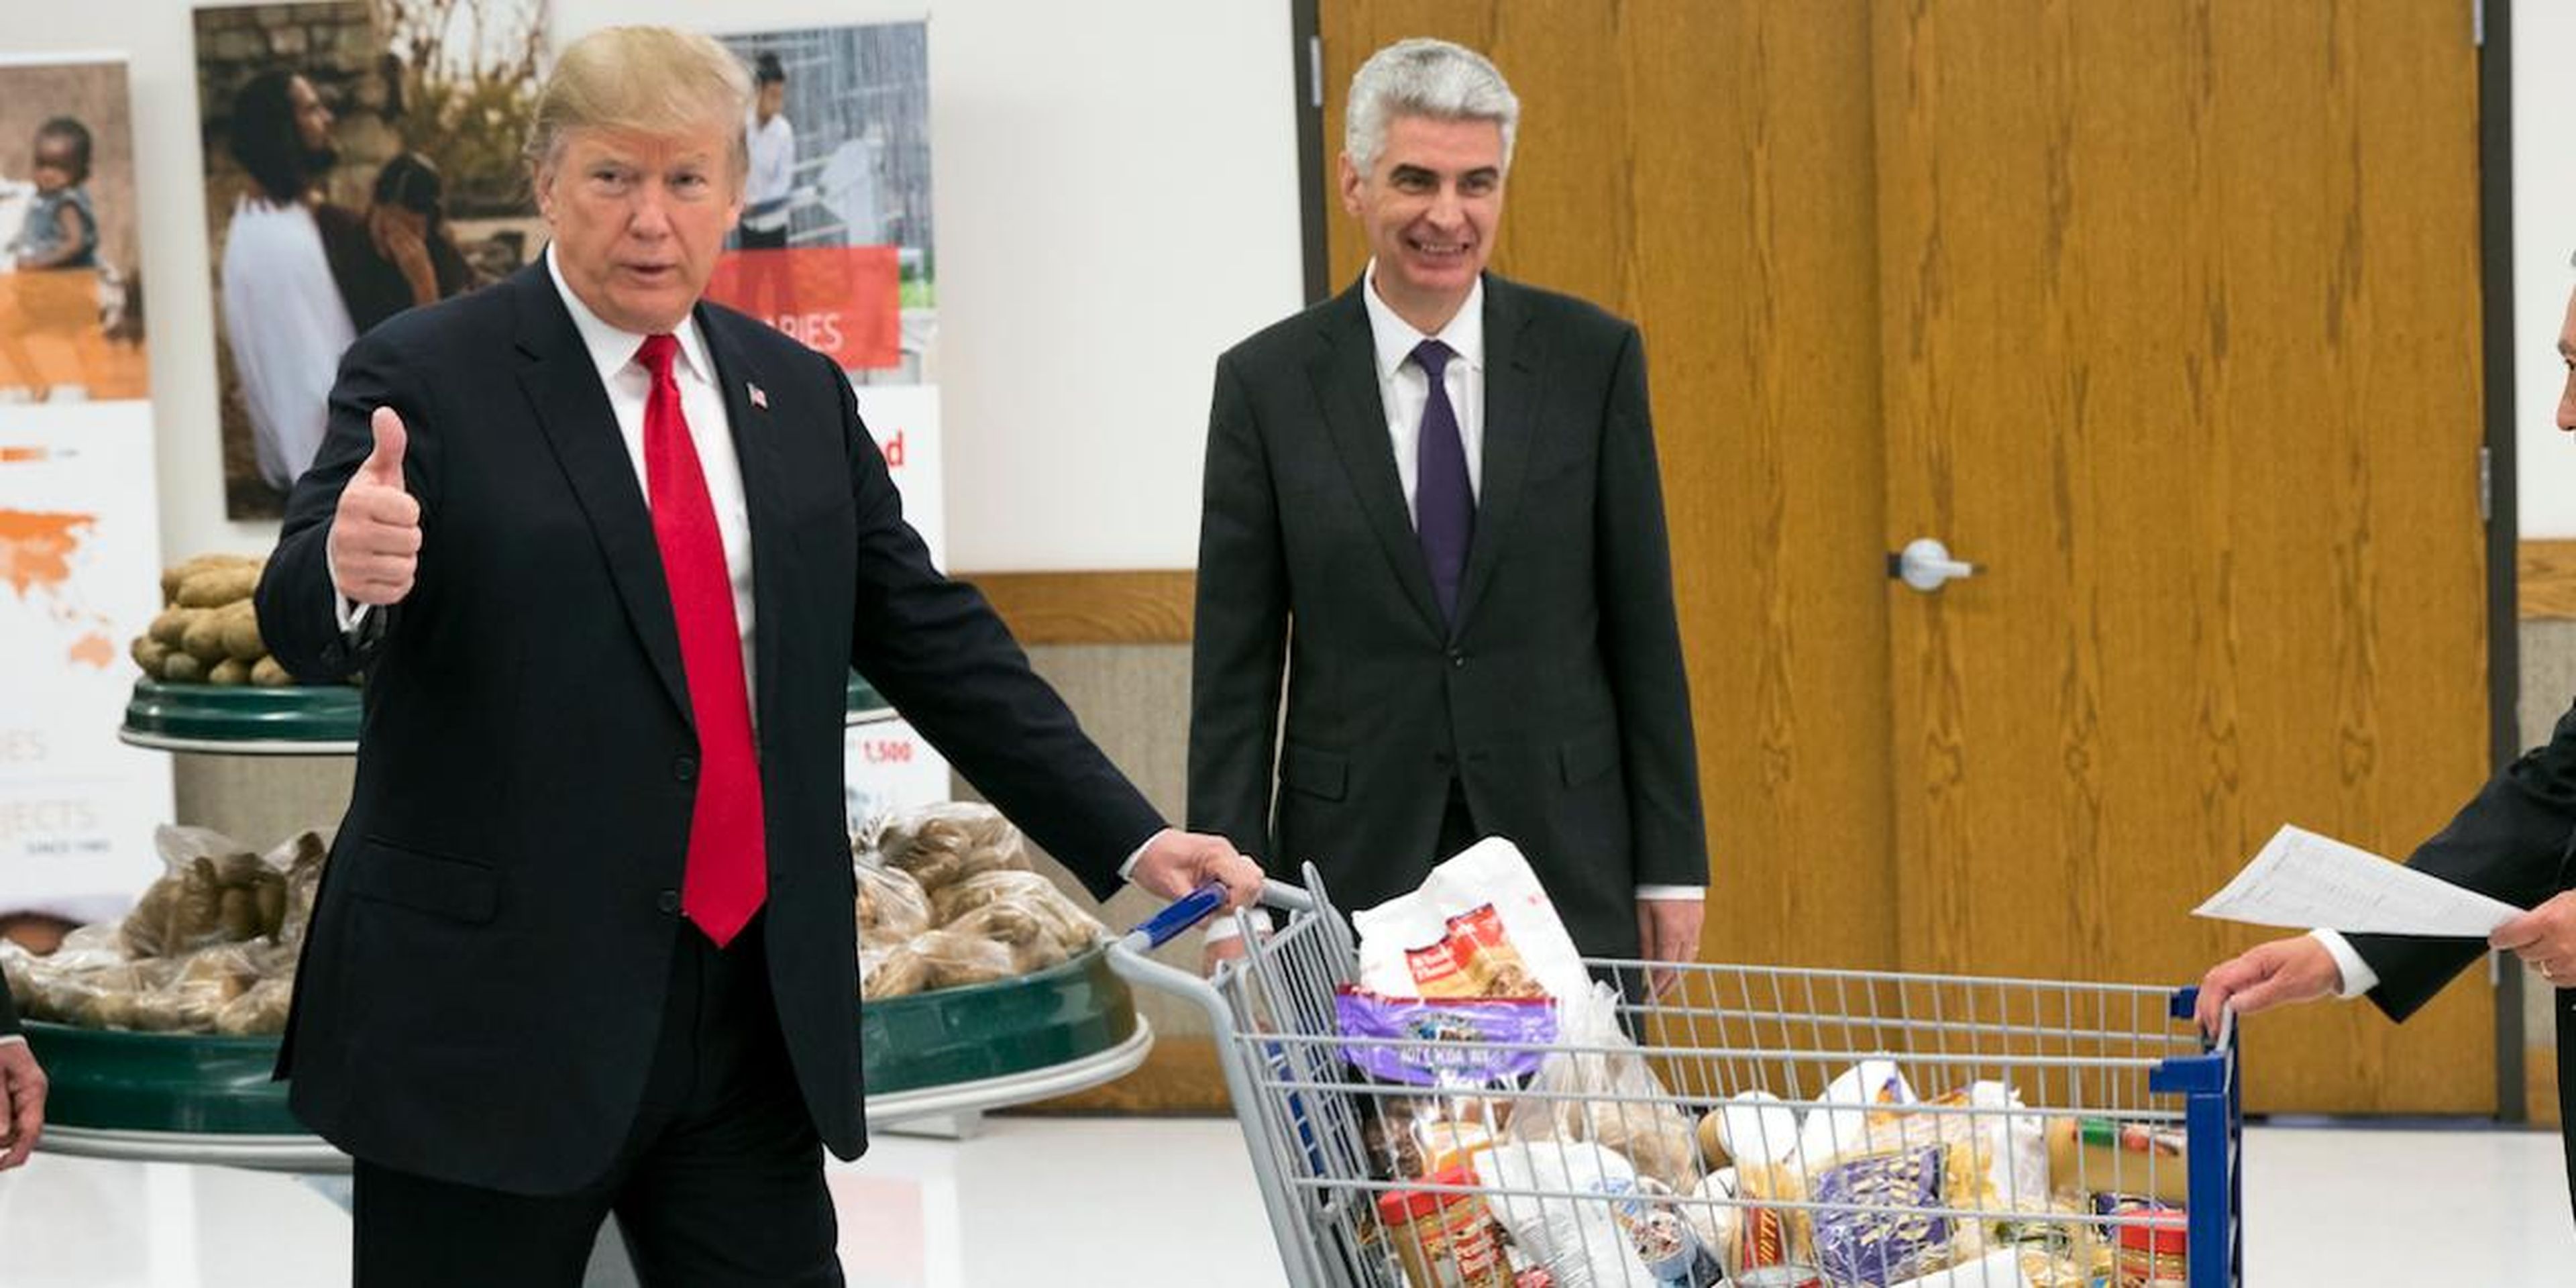 El presidente Donald Trump en un centro de distribución de alimentos en diciembre de 2017.